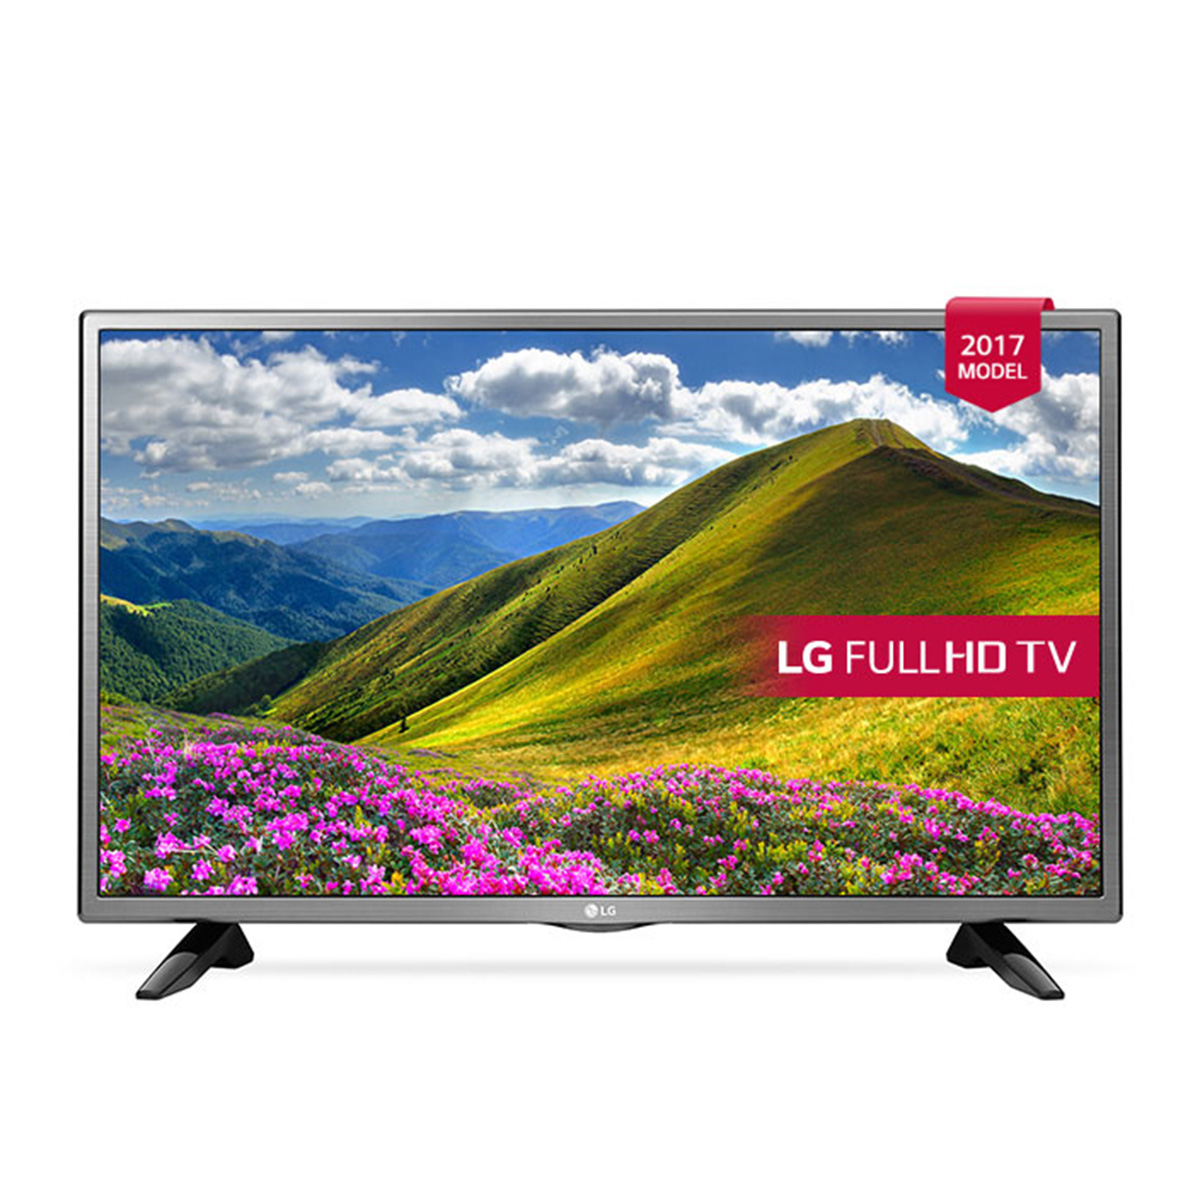 Телевизоры смарт купить дешево. Телевизор LG 43lj519v 43" (2017). Телевизор LG 32lj519u 32" (2017). Телевизор LG 32lj600u 32" (2017). Телевизор LG 32lm550b.